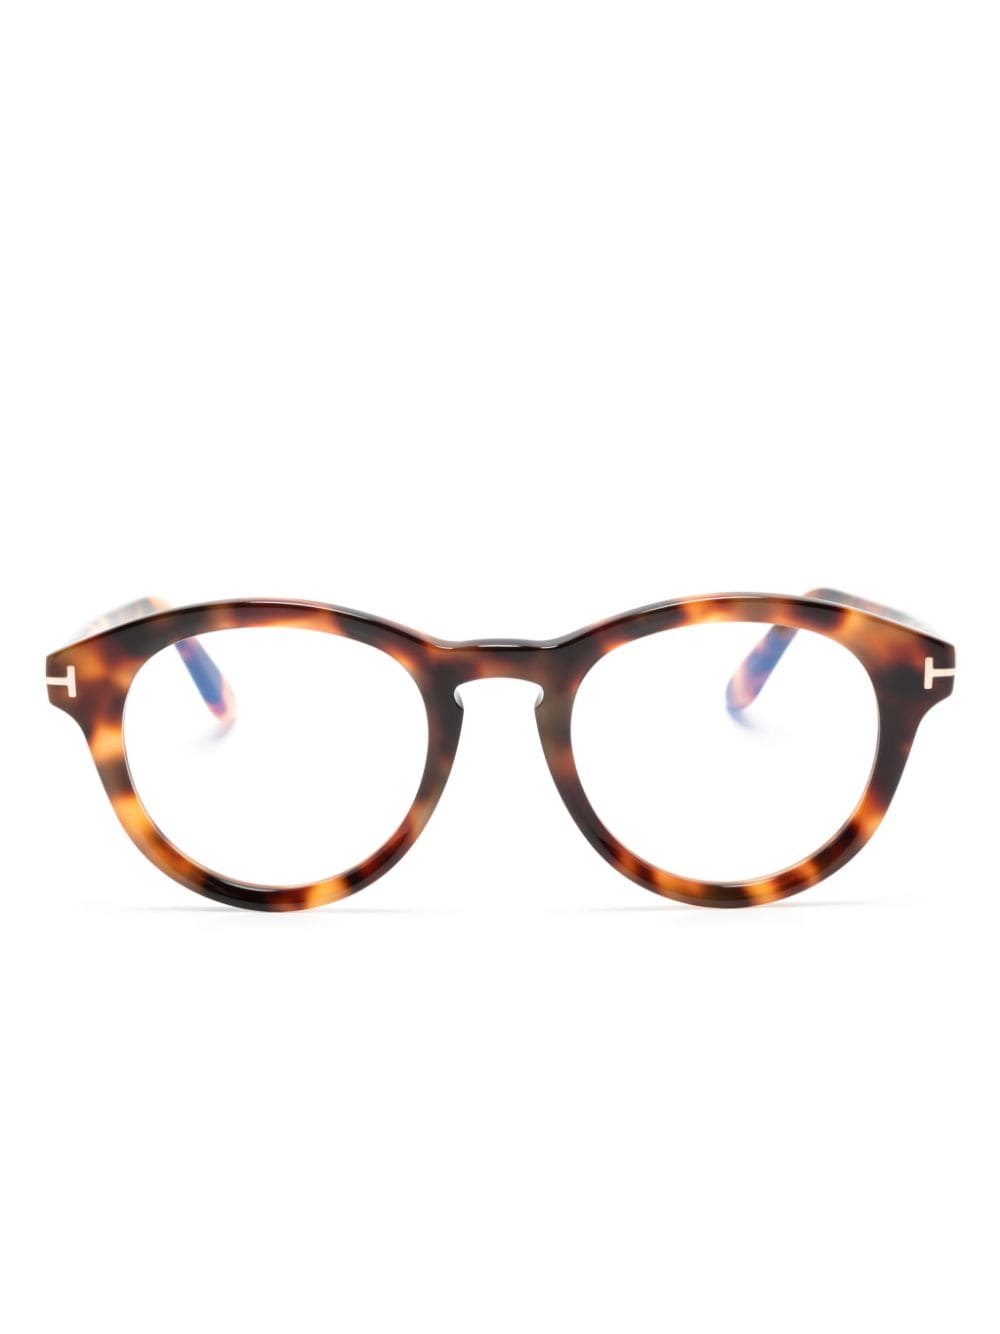 Tom Ford Tortoiseshell Round-frame Glasses In Brown